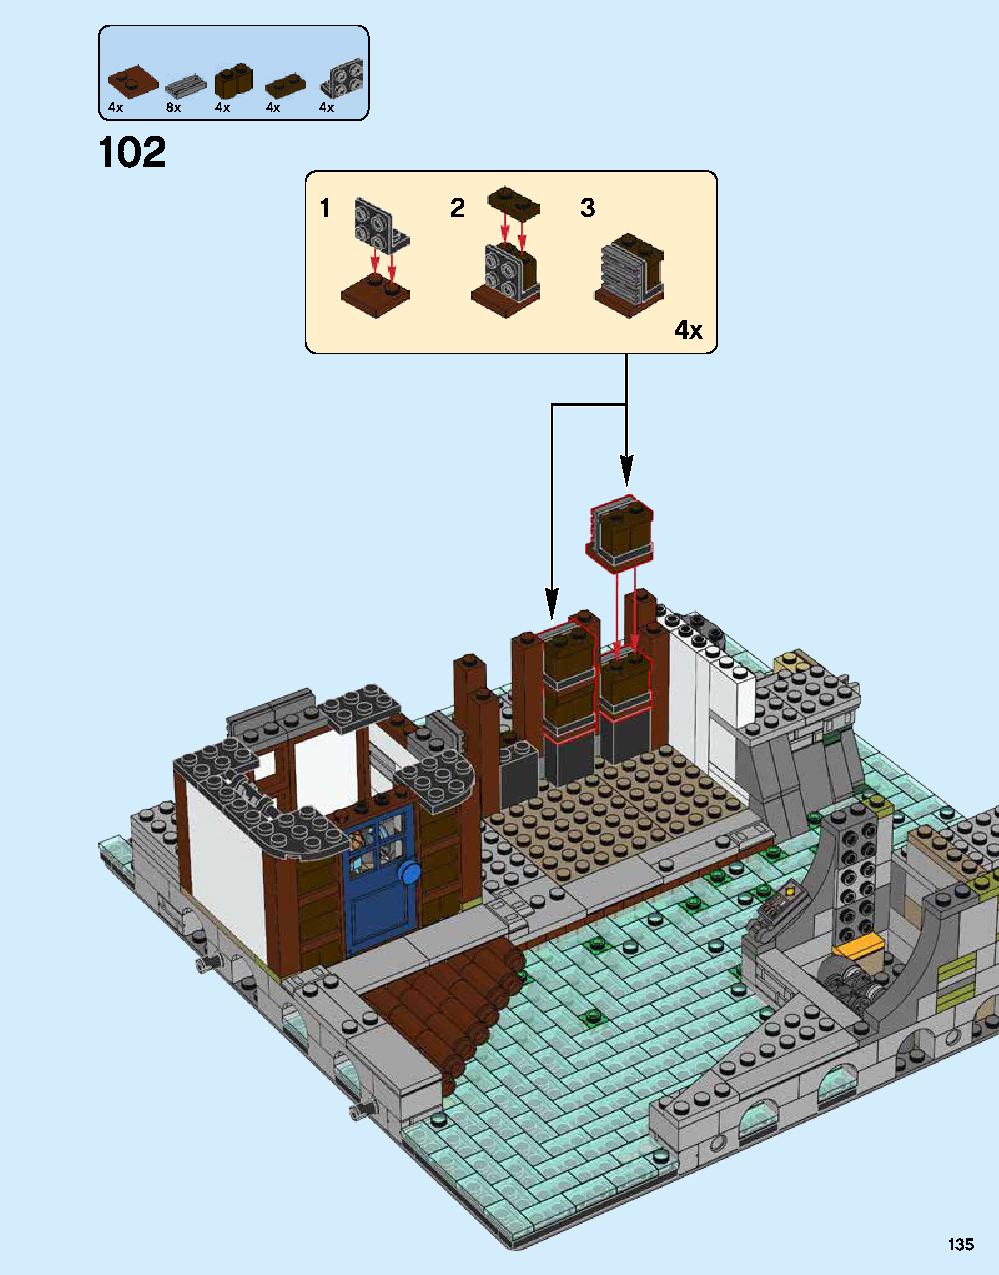 ニンジャゴー シティ 70620 レゴの商品情報 レゴの説明書・組立方法 135 page